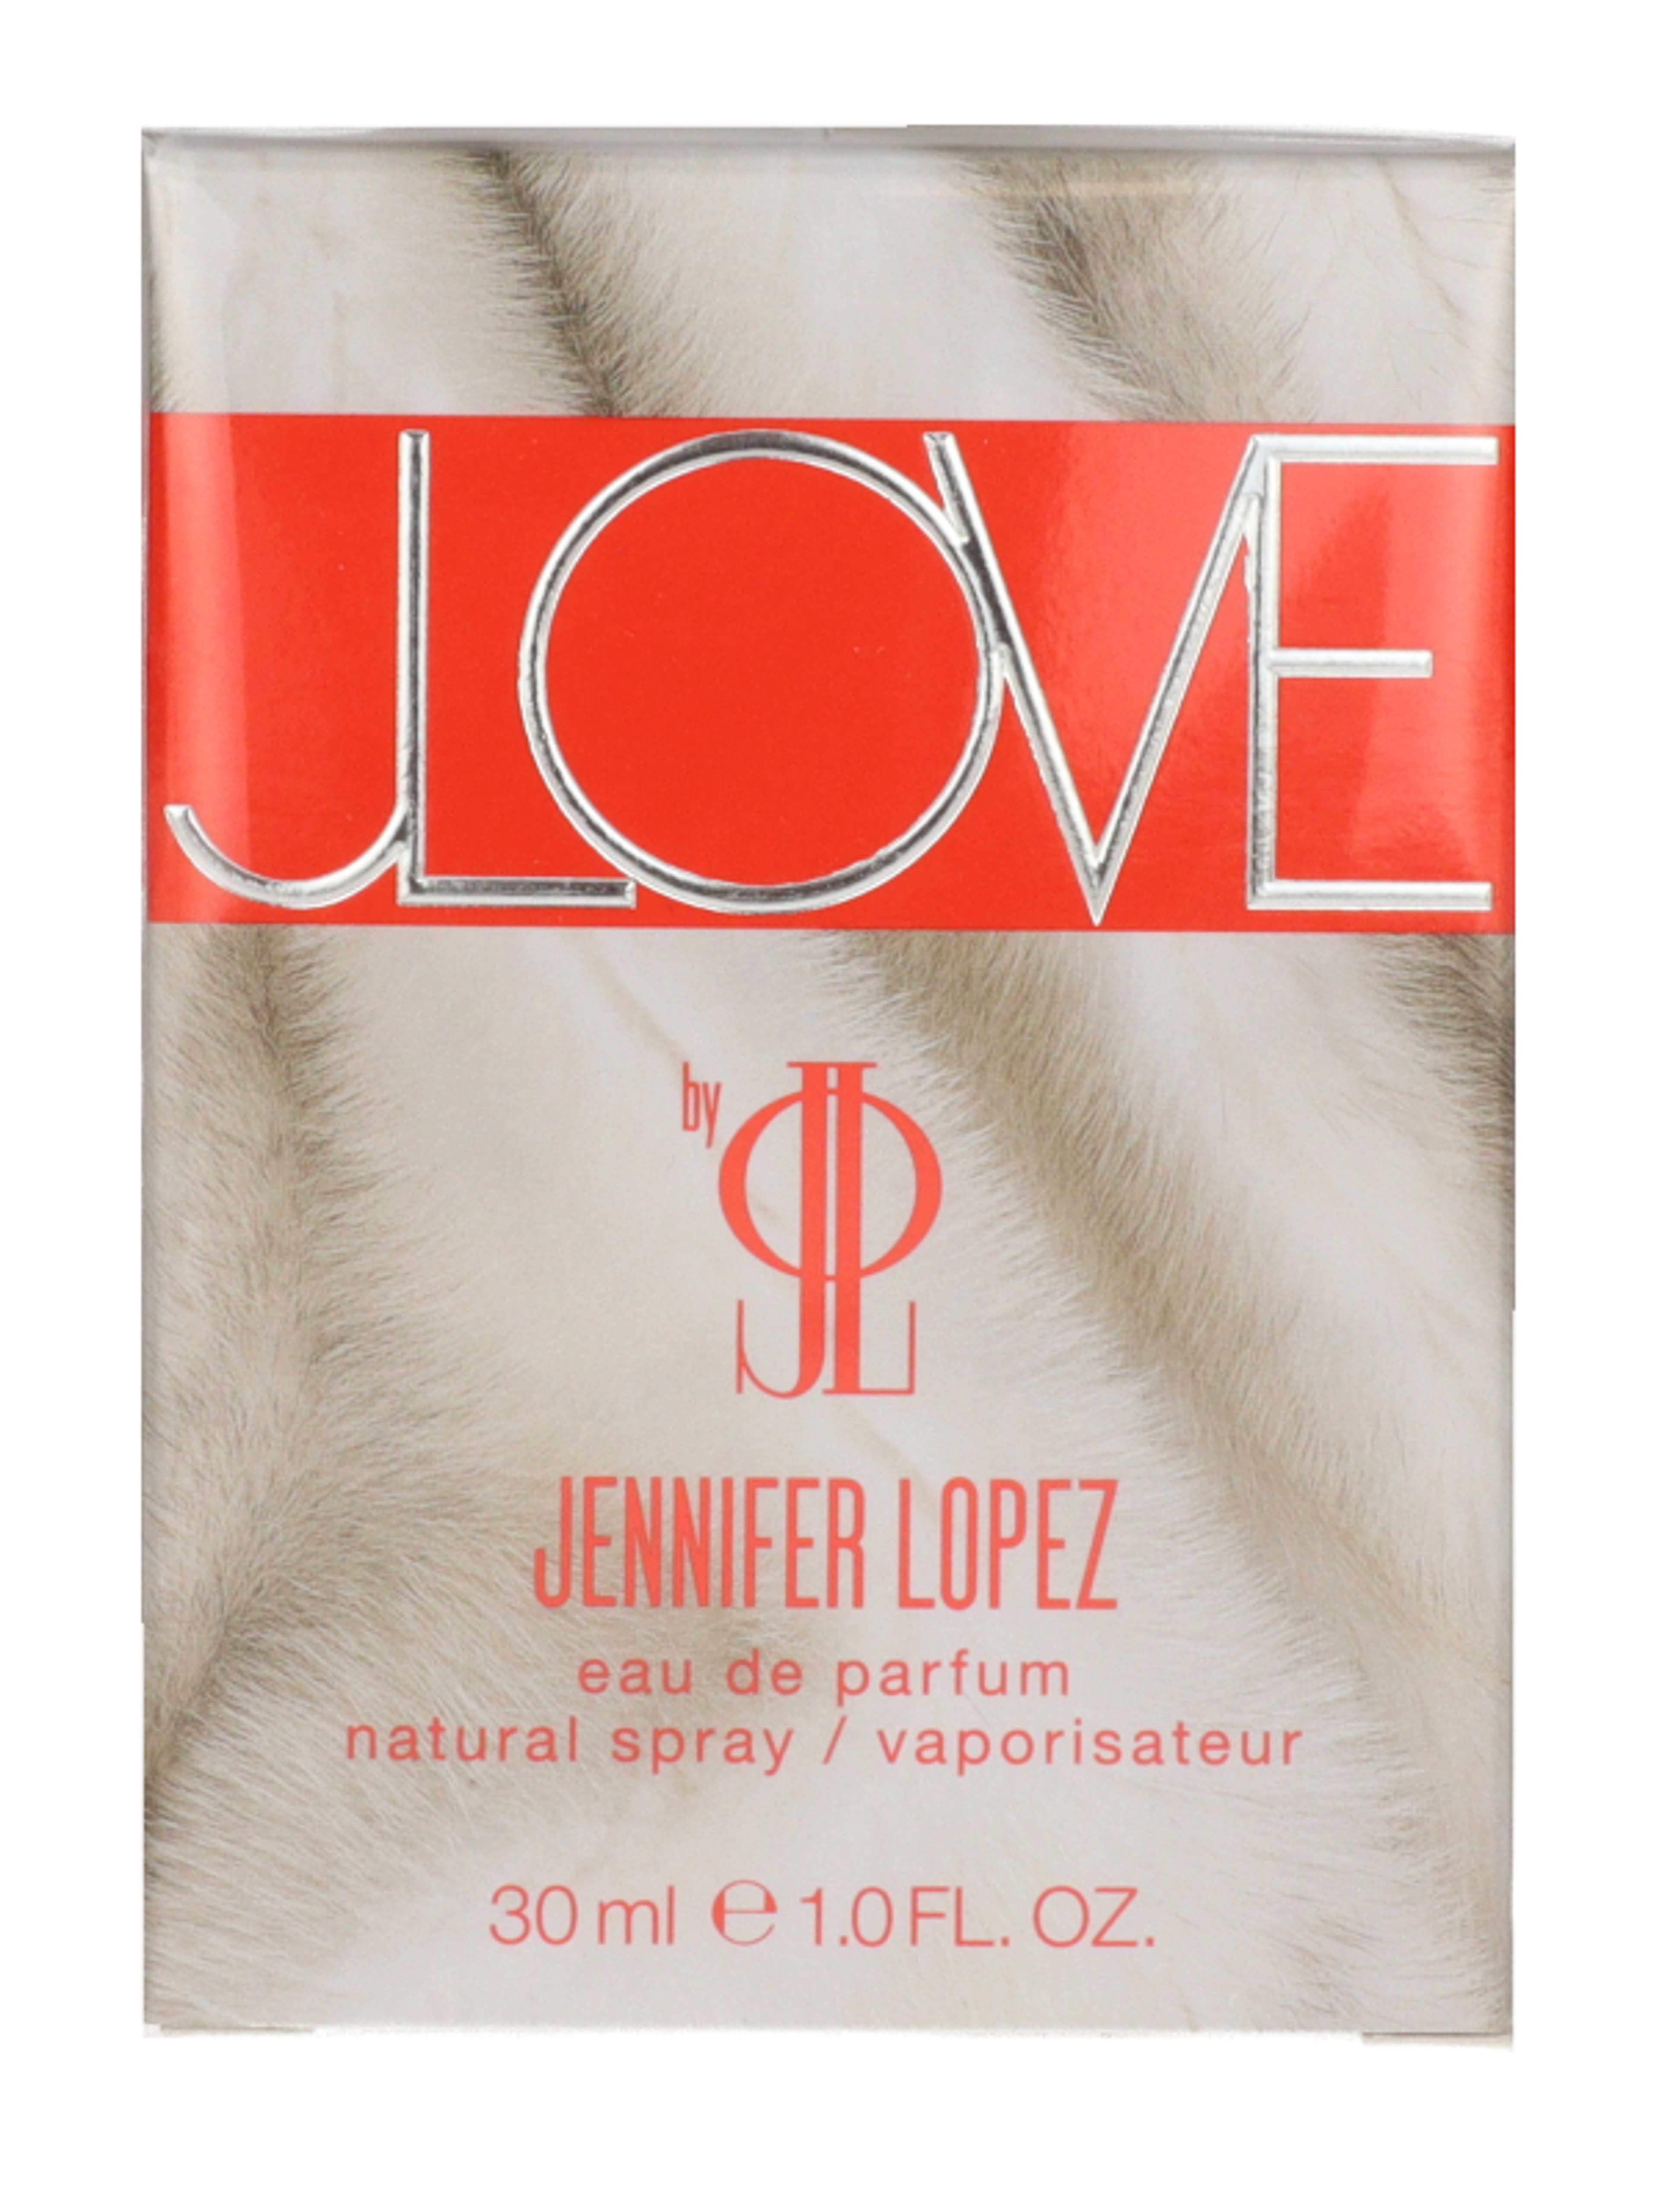 Jennifer Lopez Jlove noi Eau de Parfum - 30 ml-3